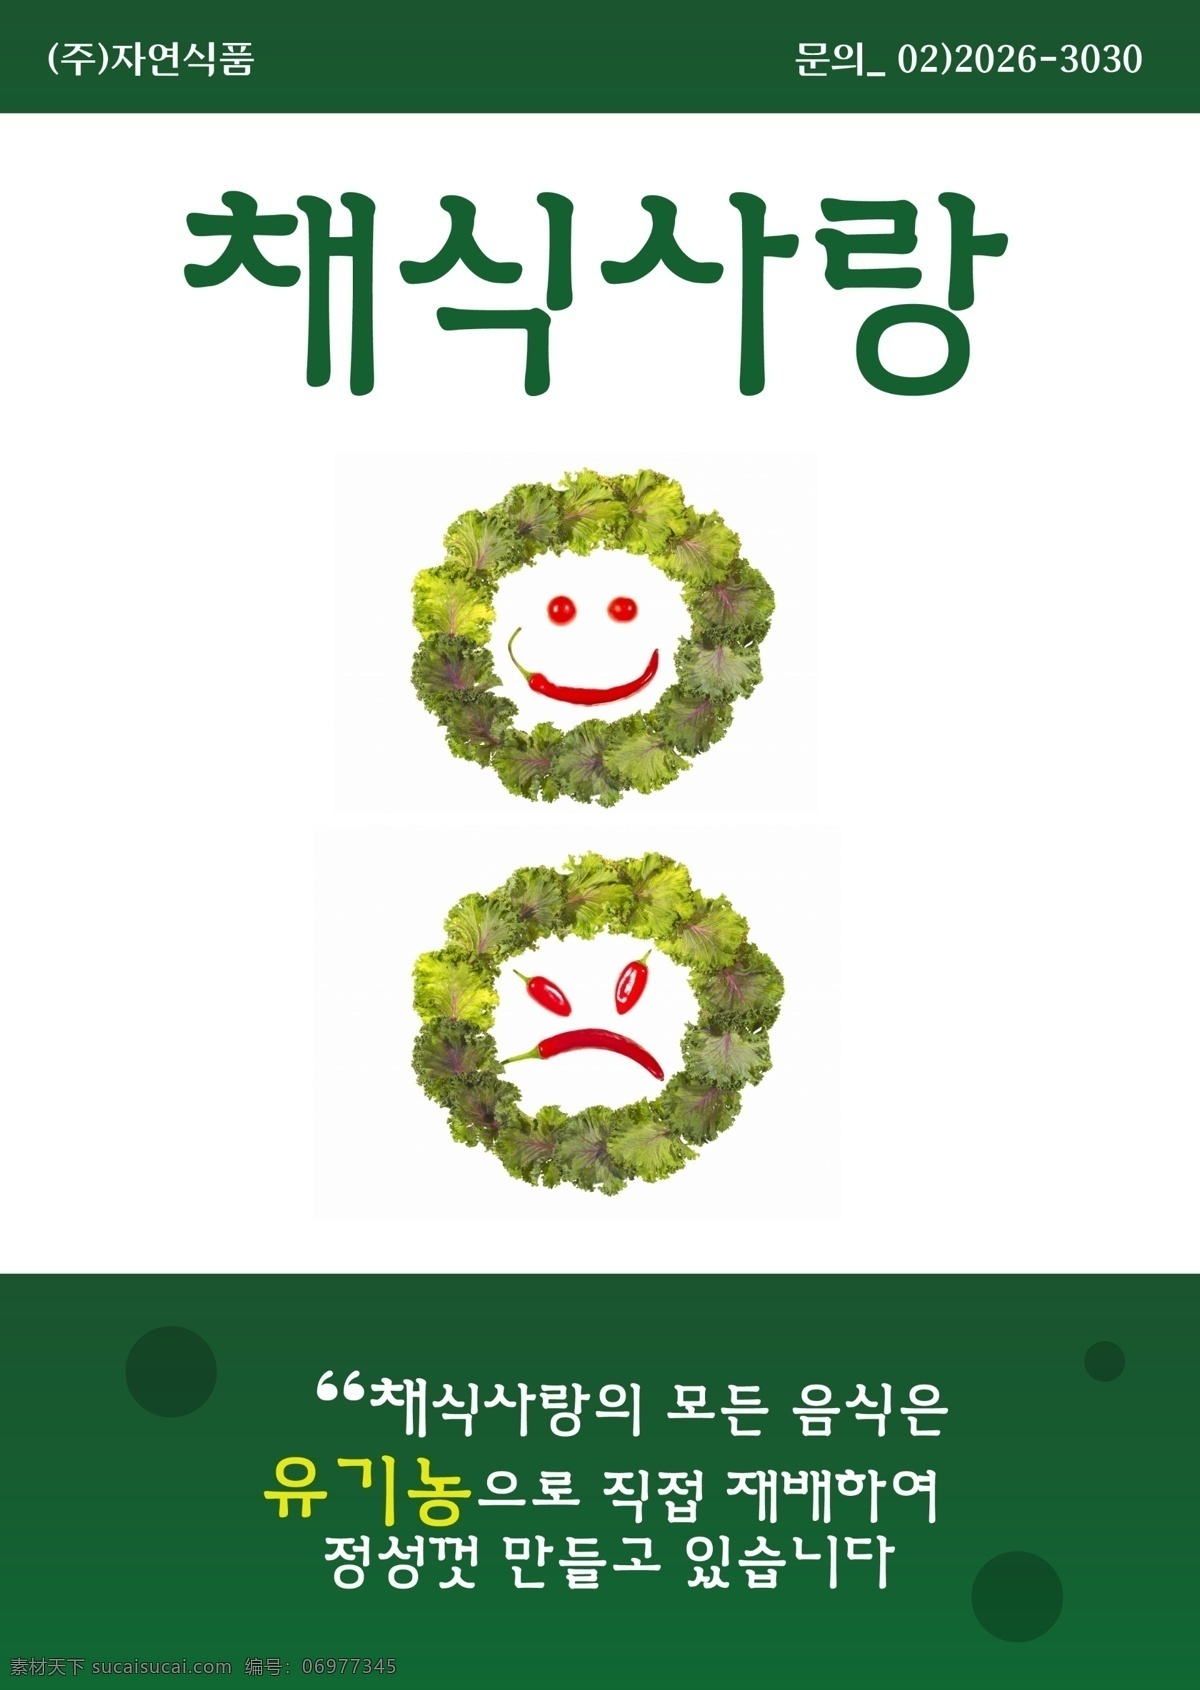 创意 清新 韩国 海报 psd素材 创意海报 清新海报 笑脸 其他海报设计